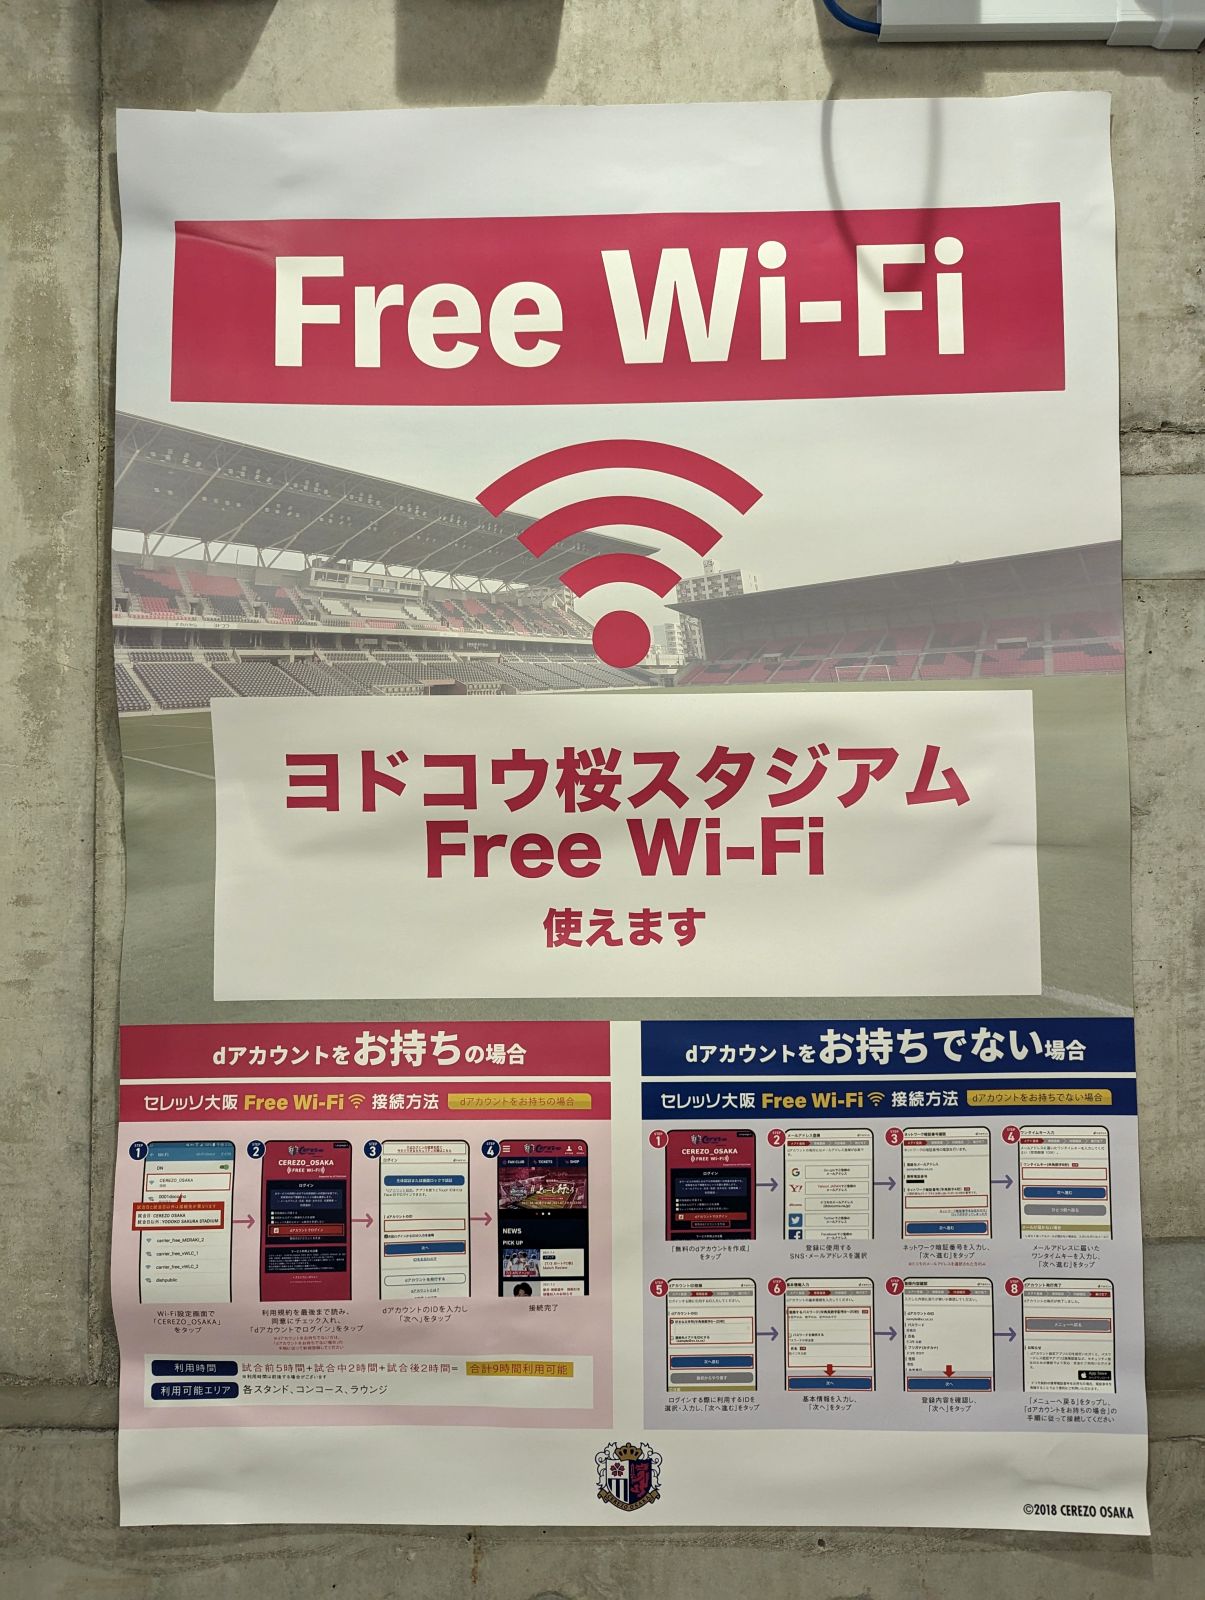 Free Wi-Fi使えます